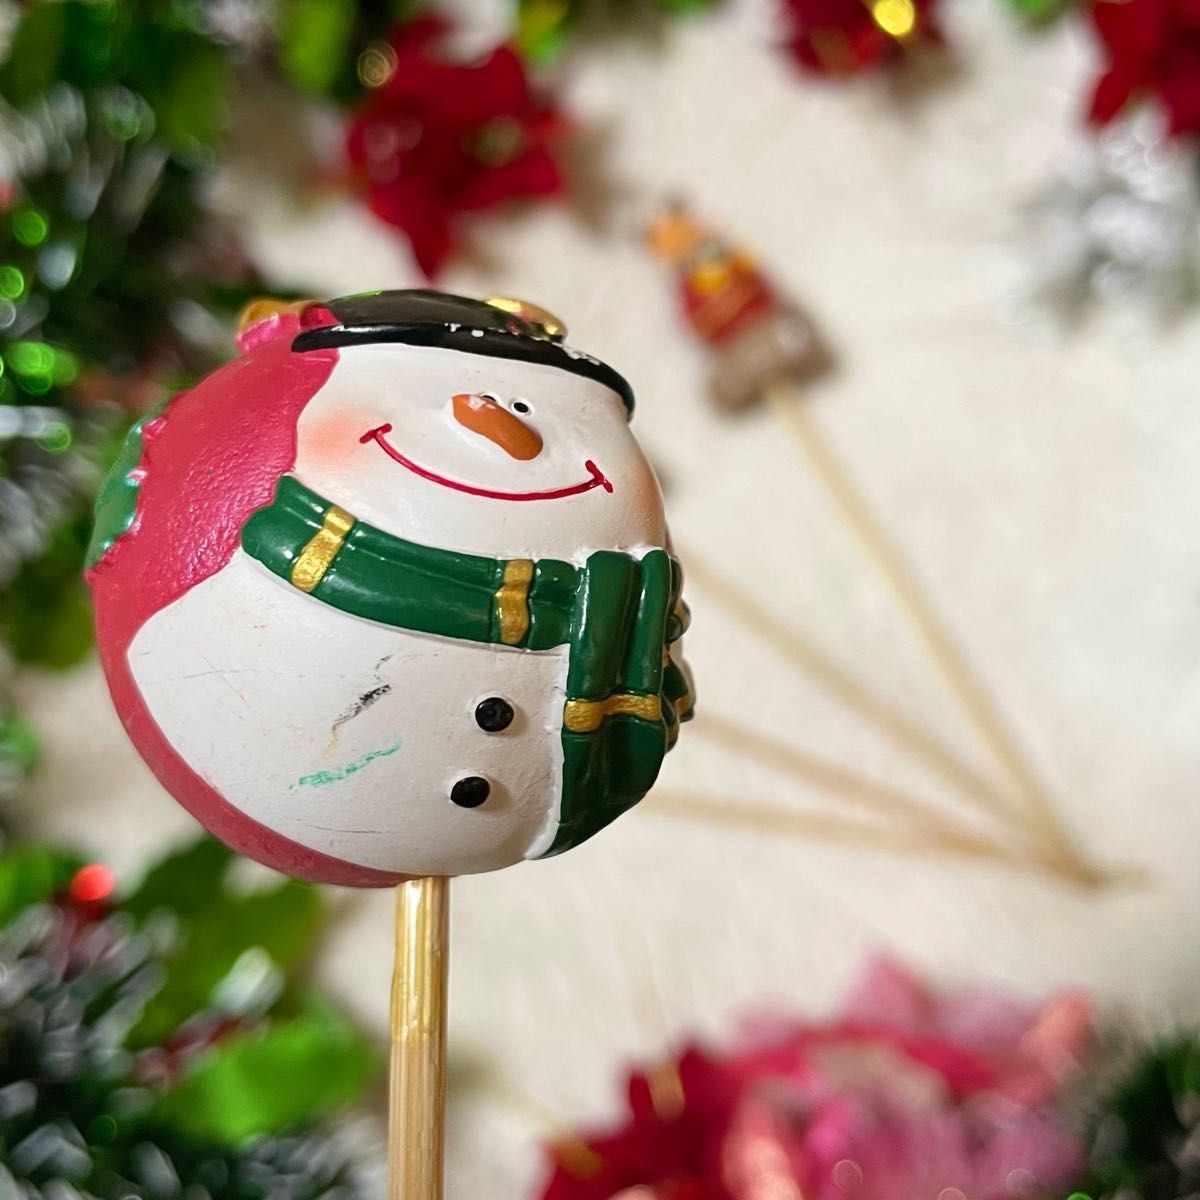 22 クリスマスピック ガーデンピック オブジェ 置き物 サンタ トナカイ 飾り ツリー  スノーマン オーナメント グッズ 雑貨